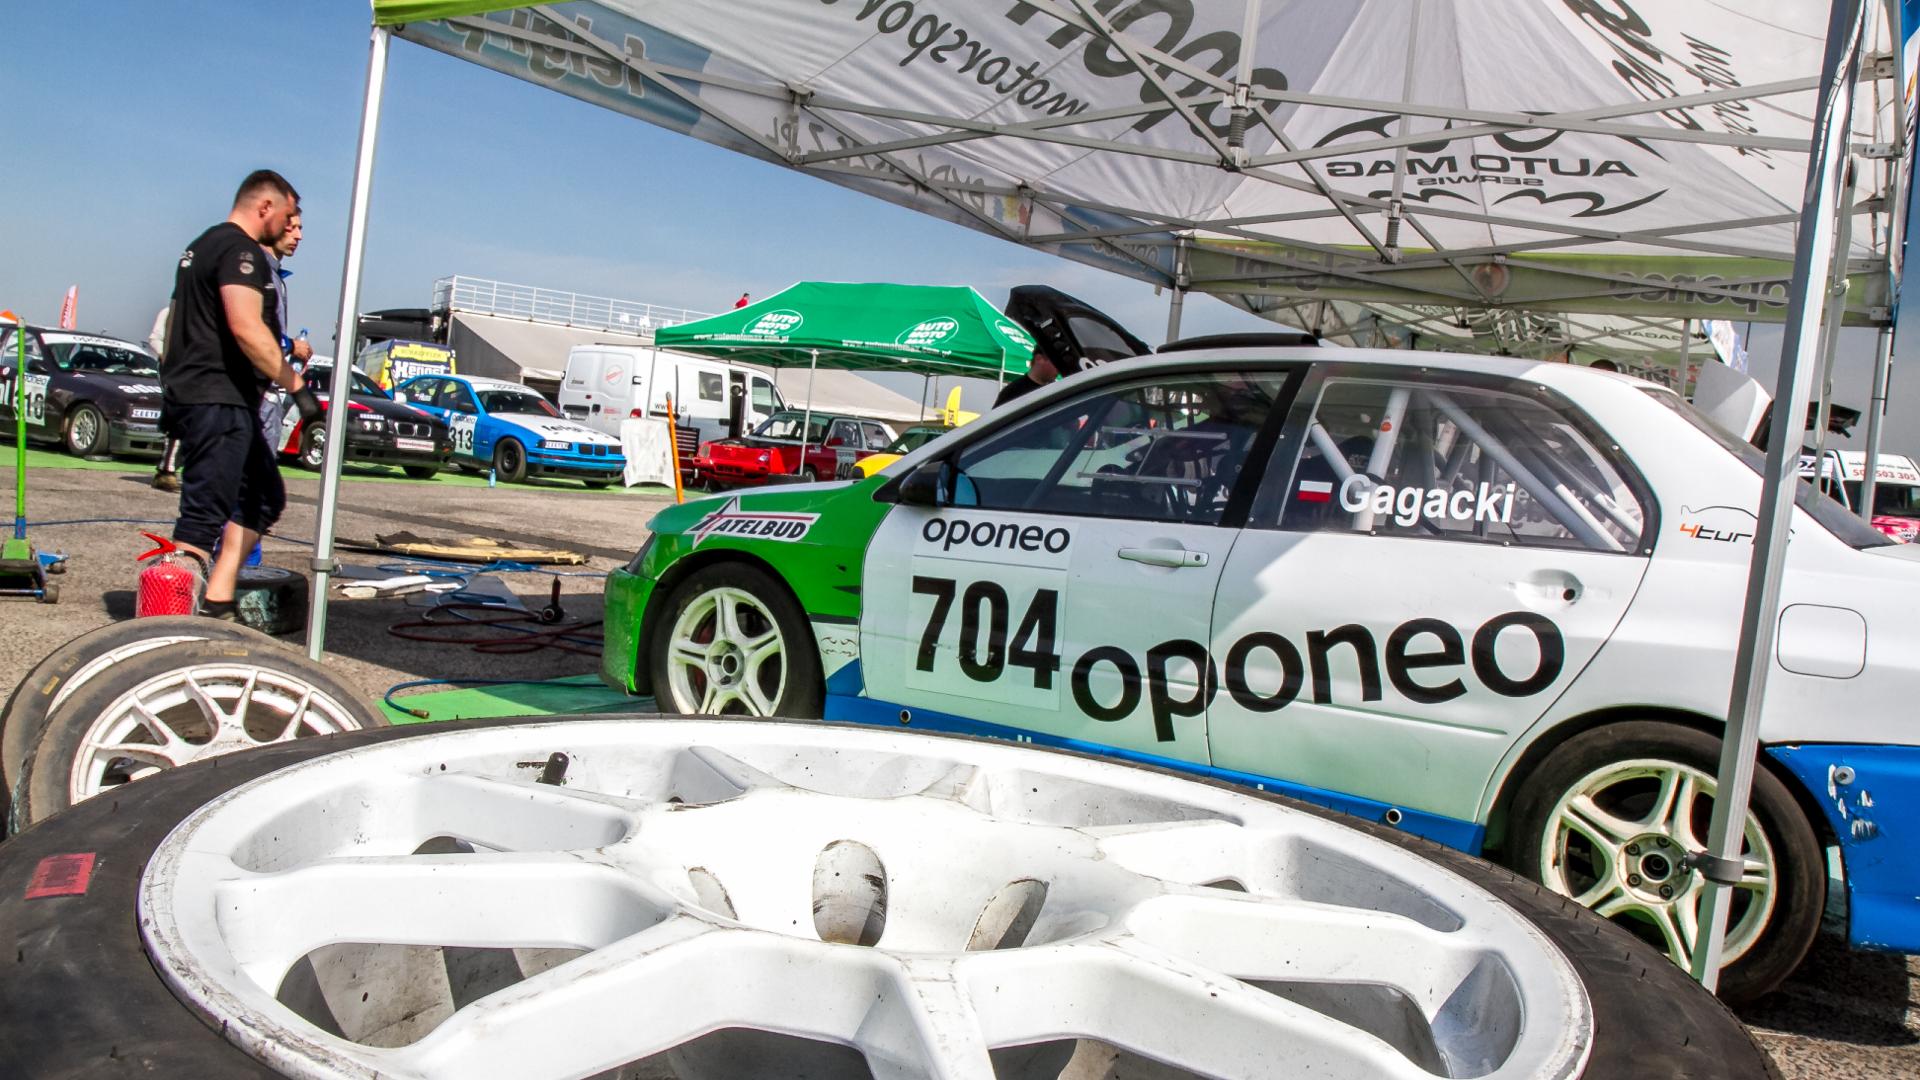 2017 OPONEO Mistrzostwa Polski w Rallycrossie • AutoCentrum.pl